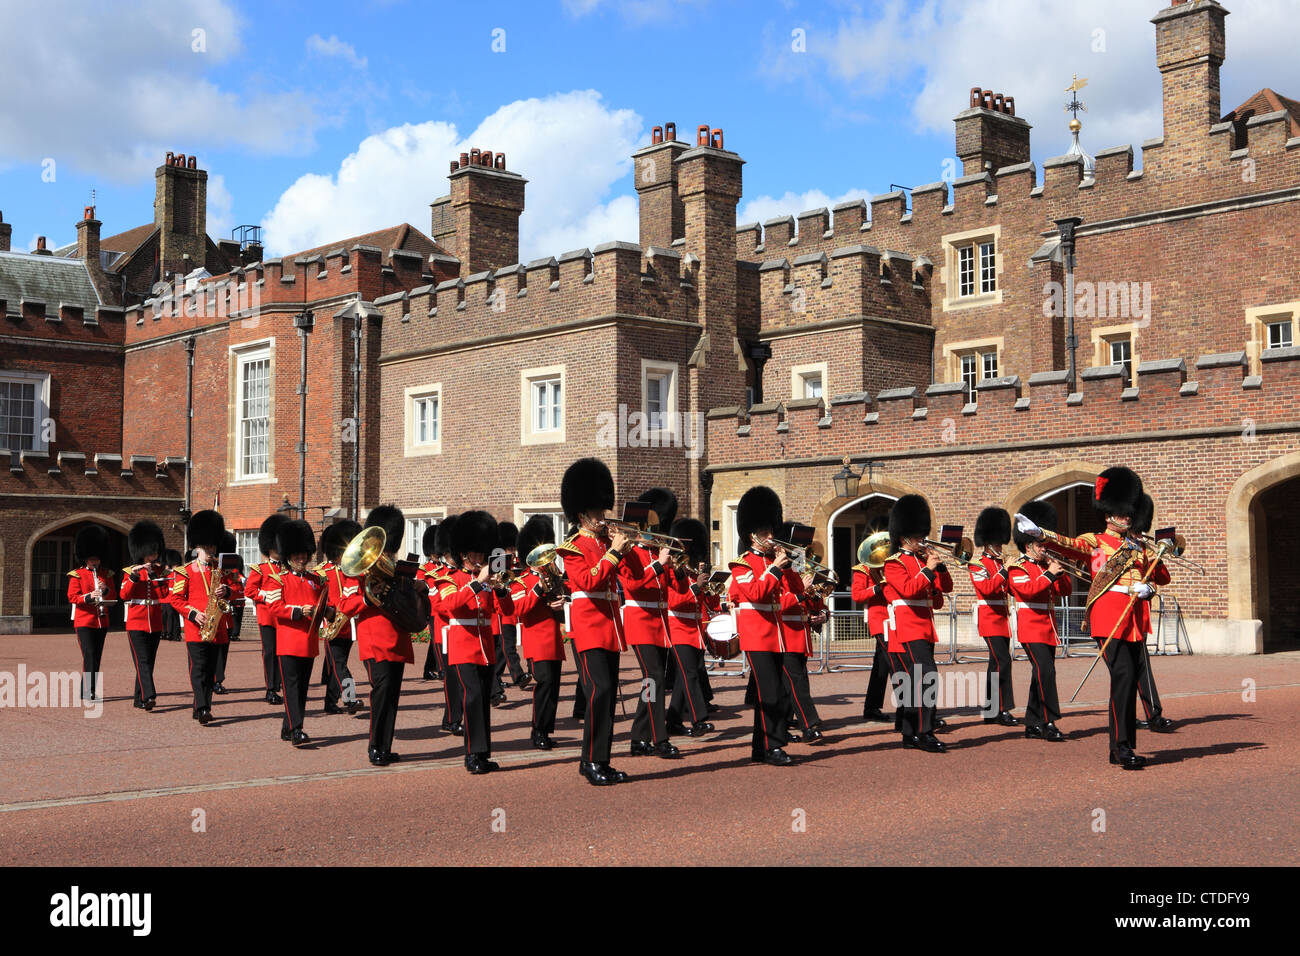 Los granaderos de la Guardia ceremonial marchando fuera de St James's Palace hacia Buckingham Palace en Londres, Reino Unido Foto de stock